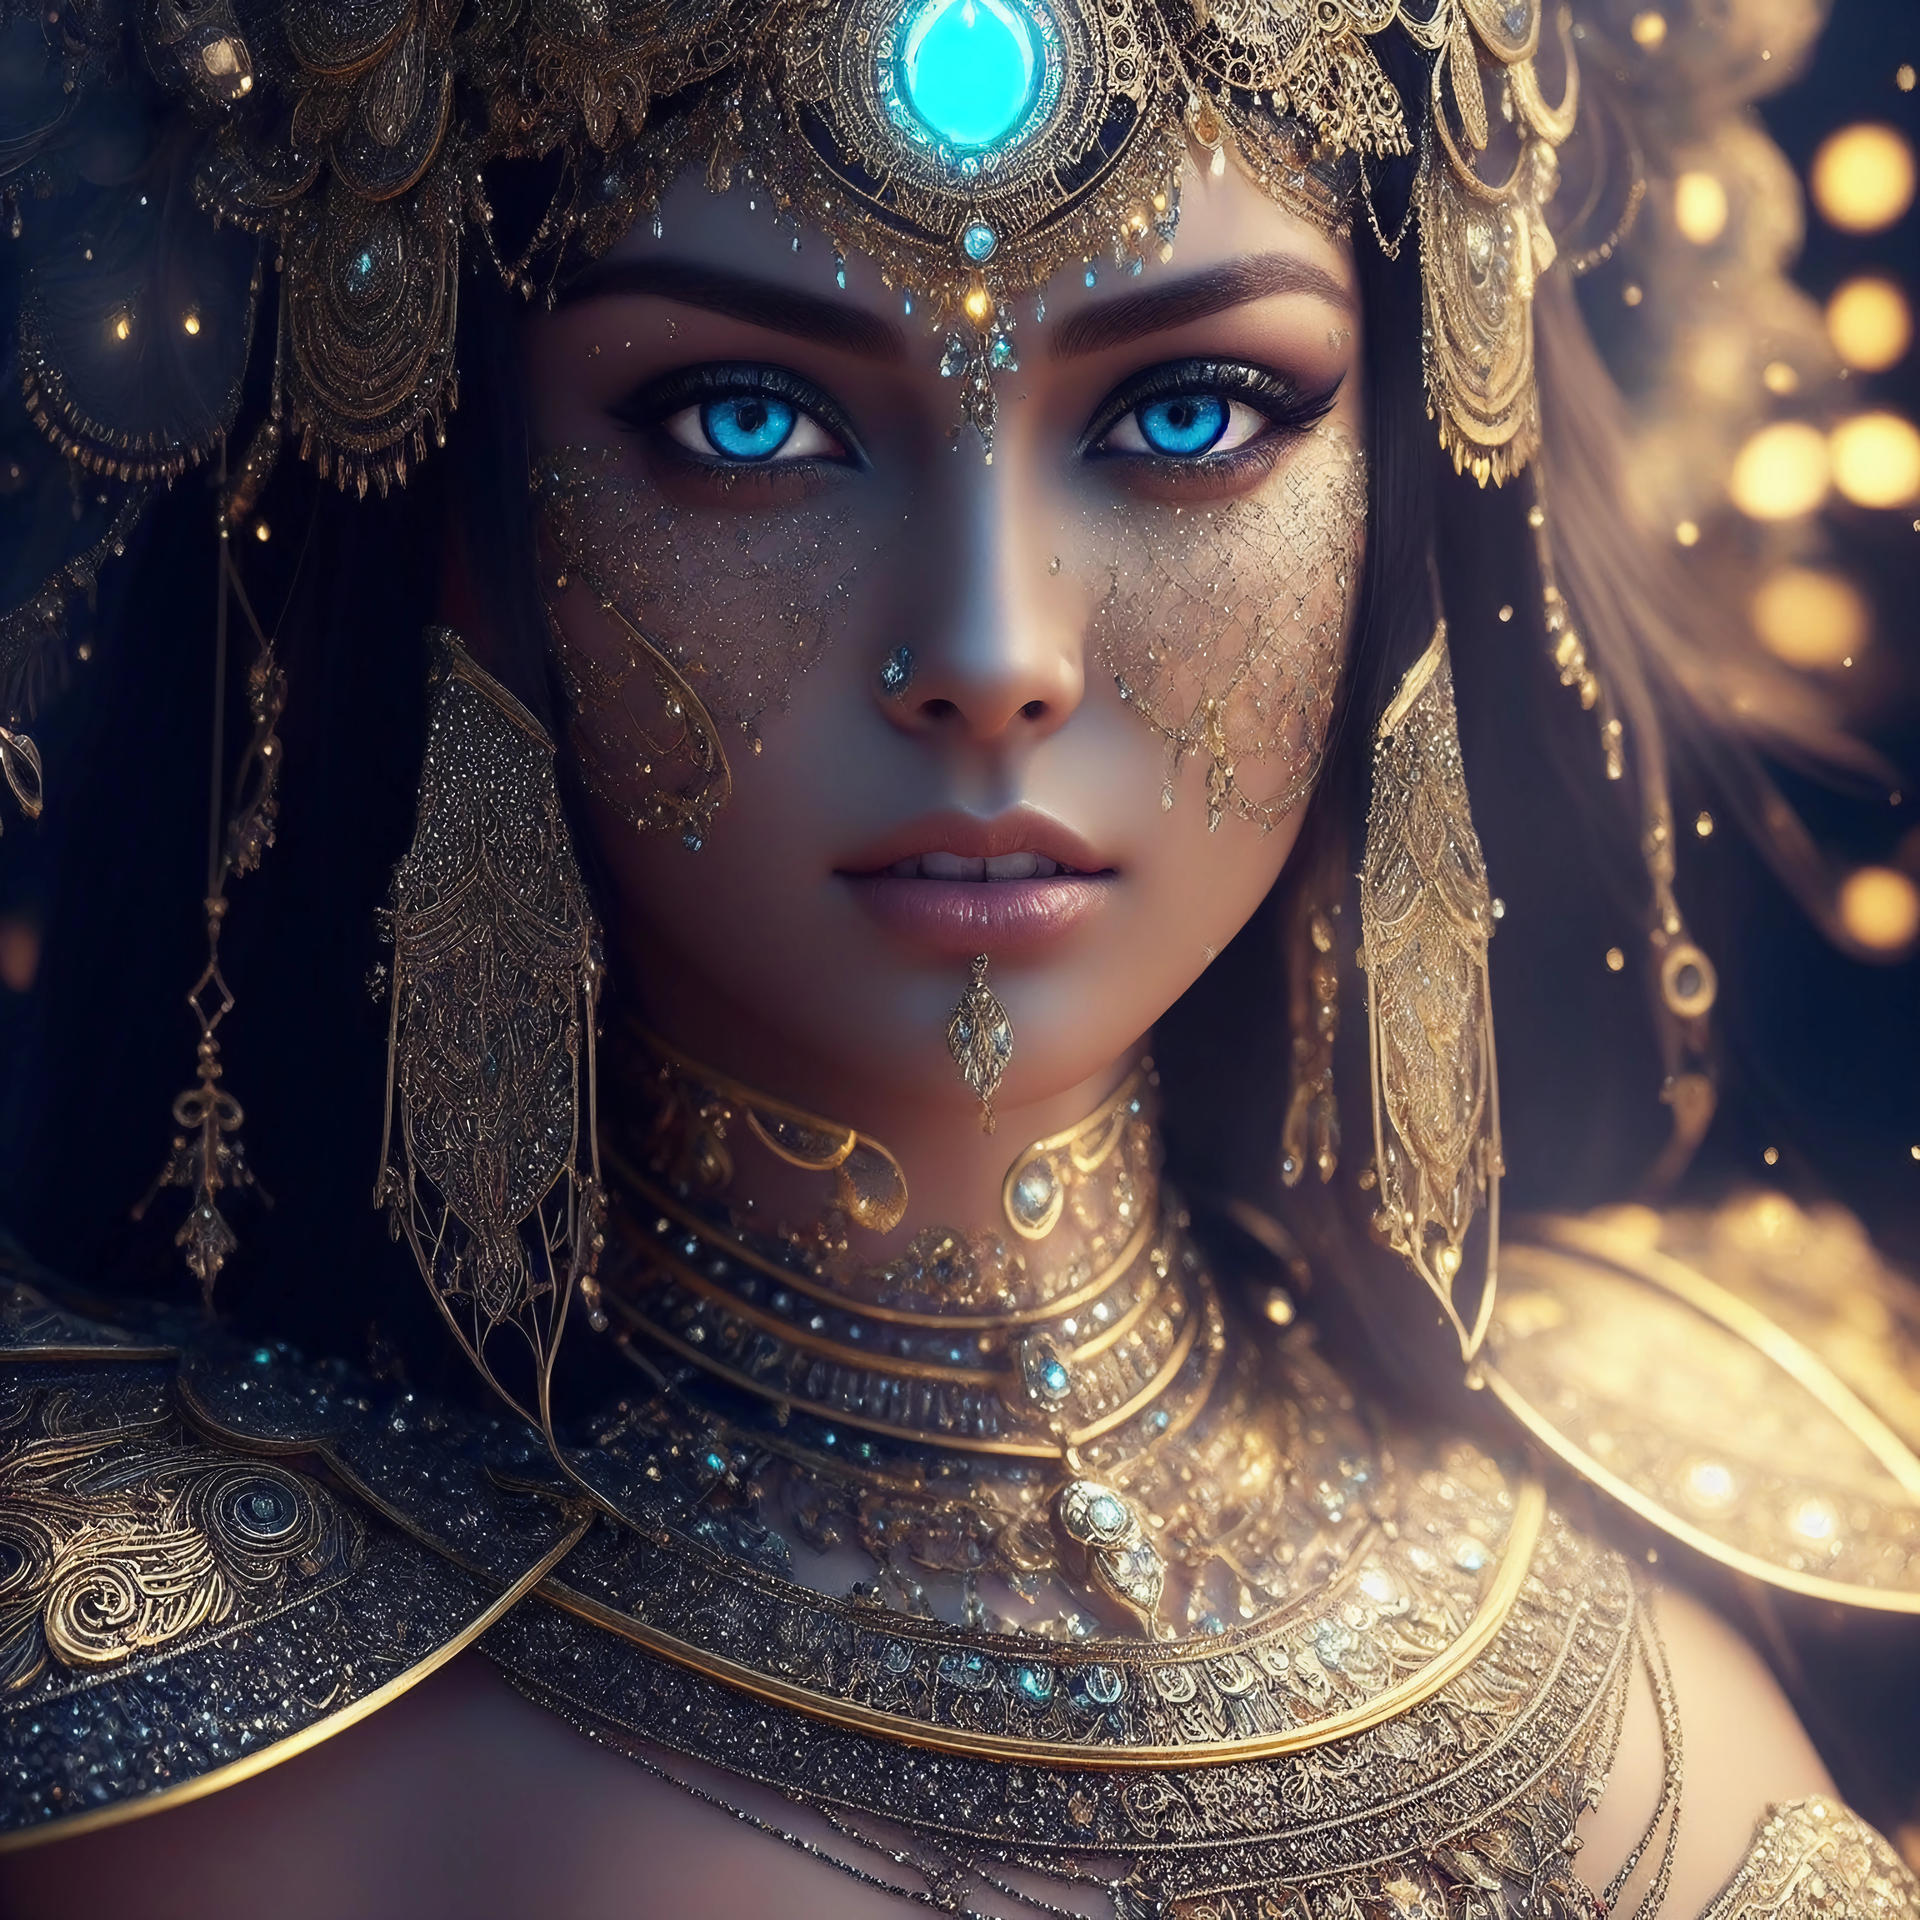 An Egyptian Cleopatra by NobodiN0Z on DeviantArt